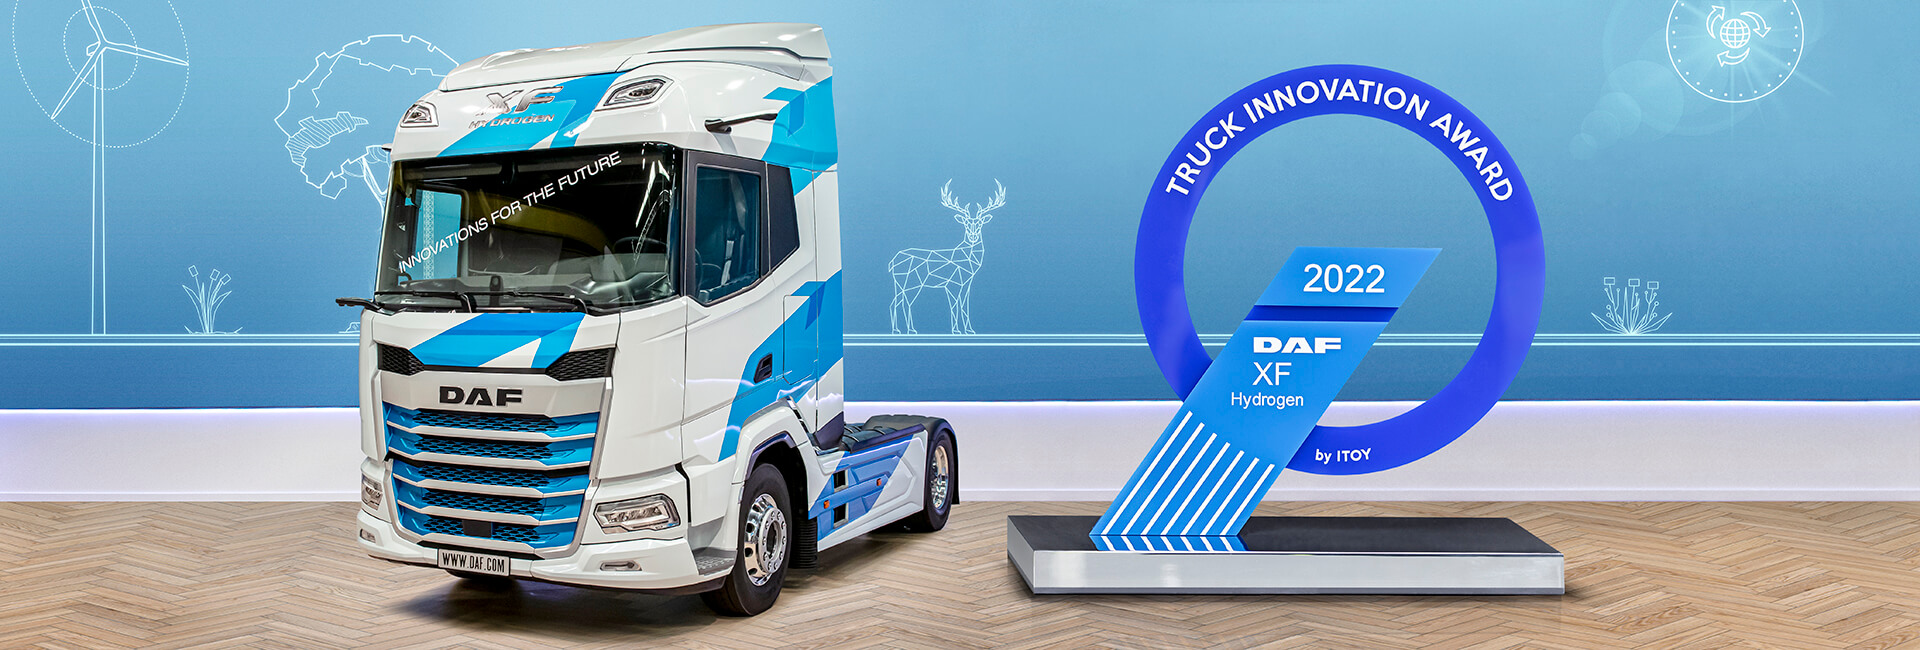 2021185_1920x650px_DAF-XF_H2_Innovation_truck